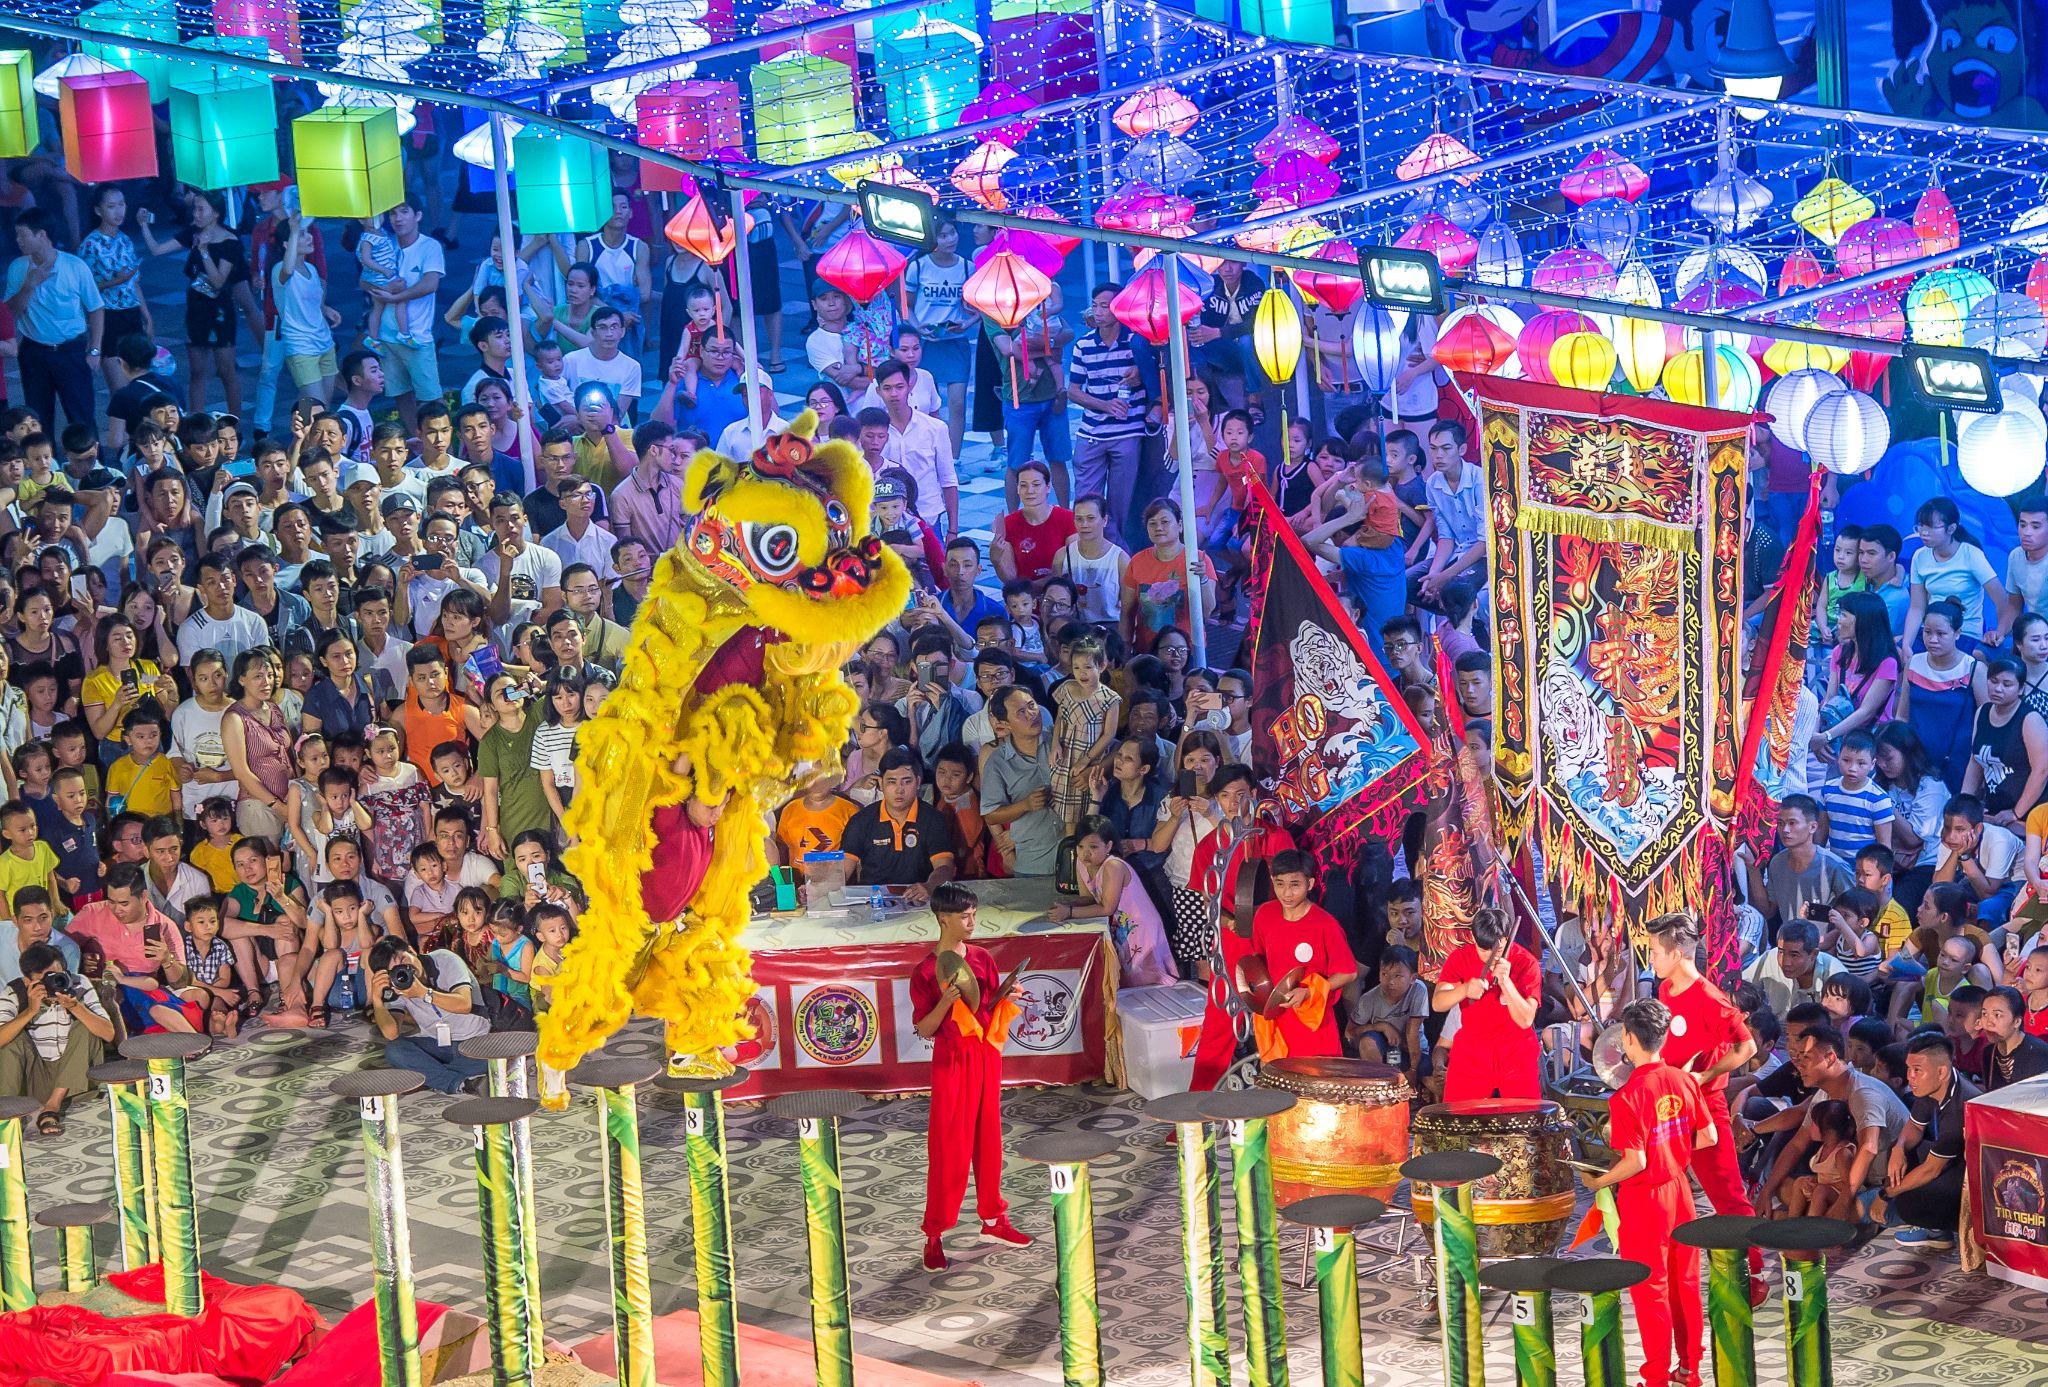 Trình diễn Lân Sư Rồng luôn là “đặc sản” mà du khách không nên bỏ lỡ khi ghé thăm Công viên Châu Á 